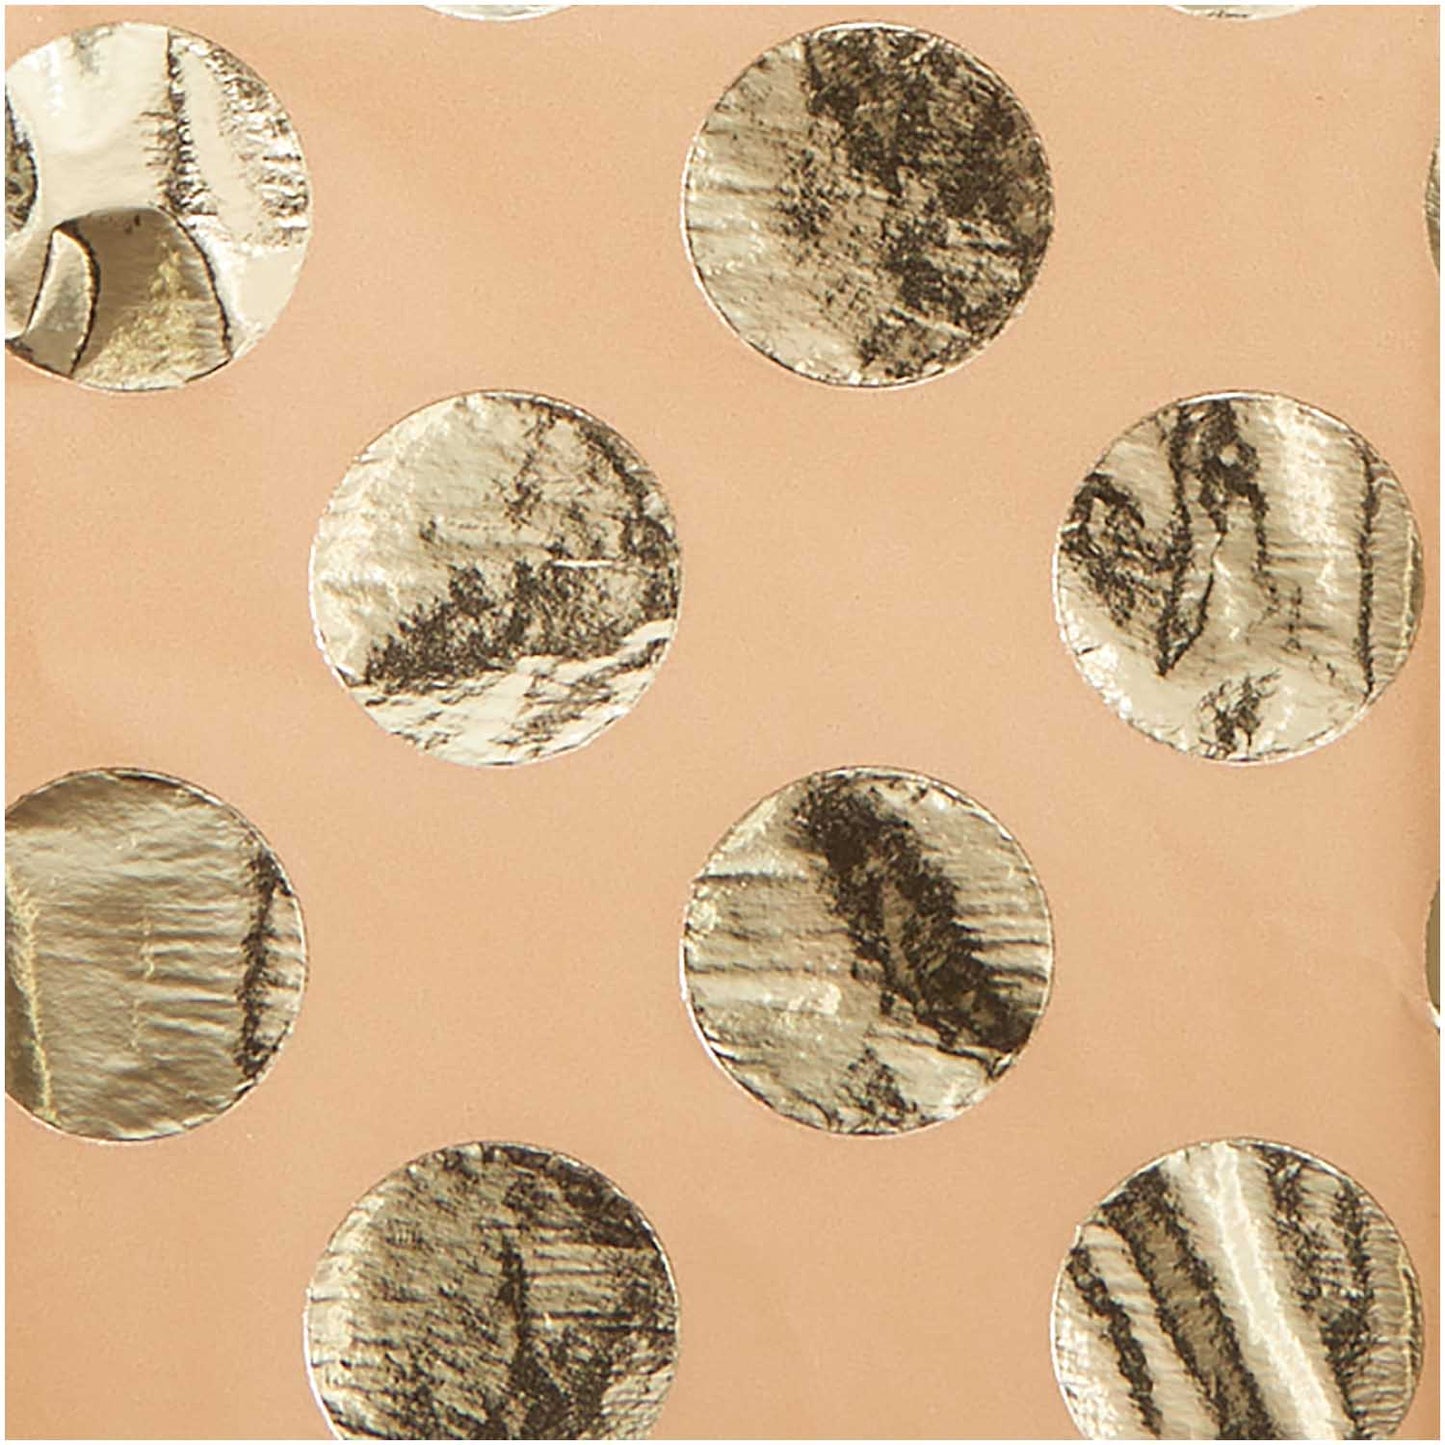 hedvábný balicí papír – přírodní/hnědý se zlatými puntíky